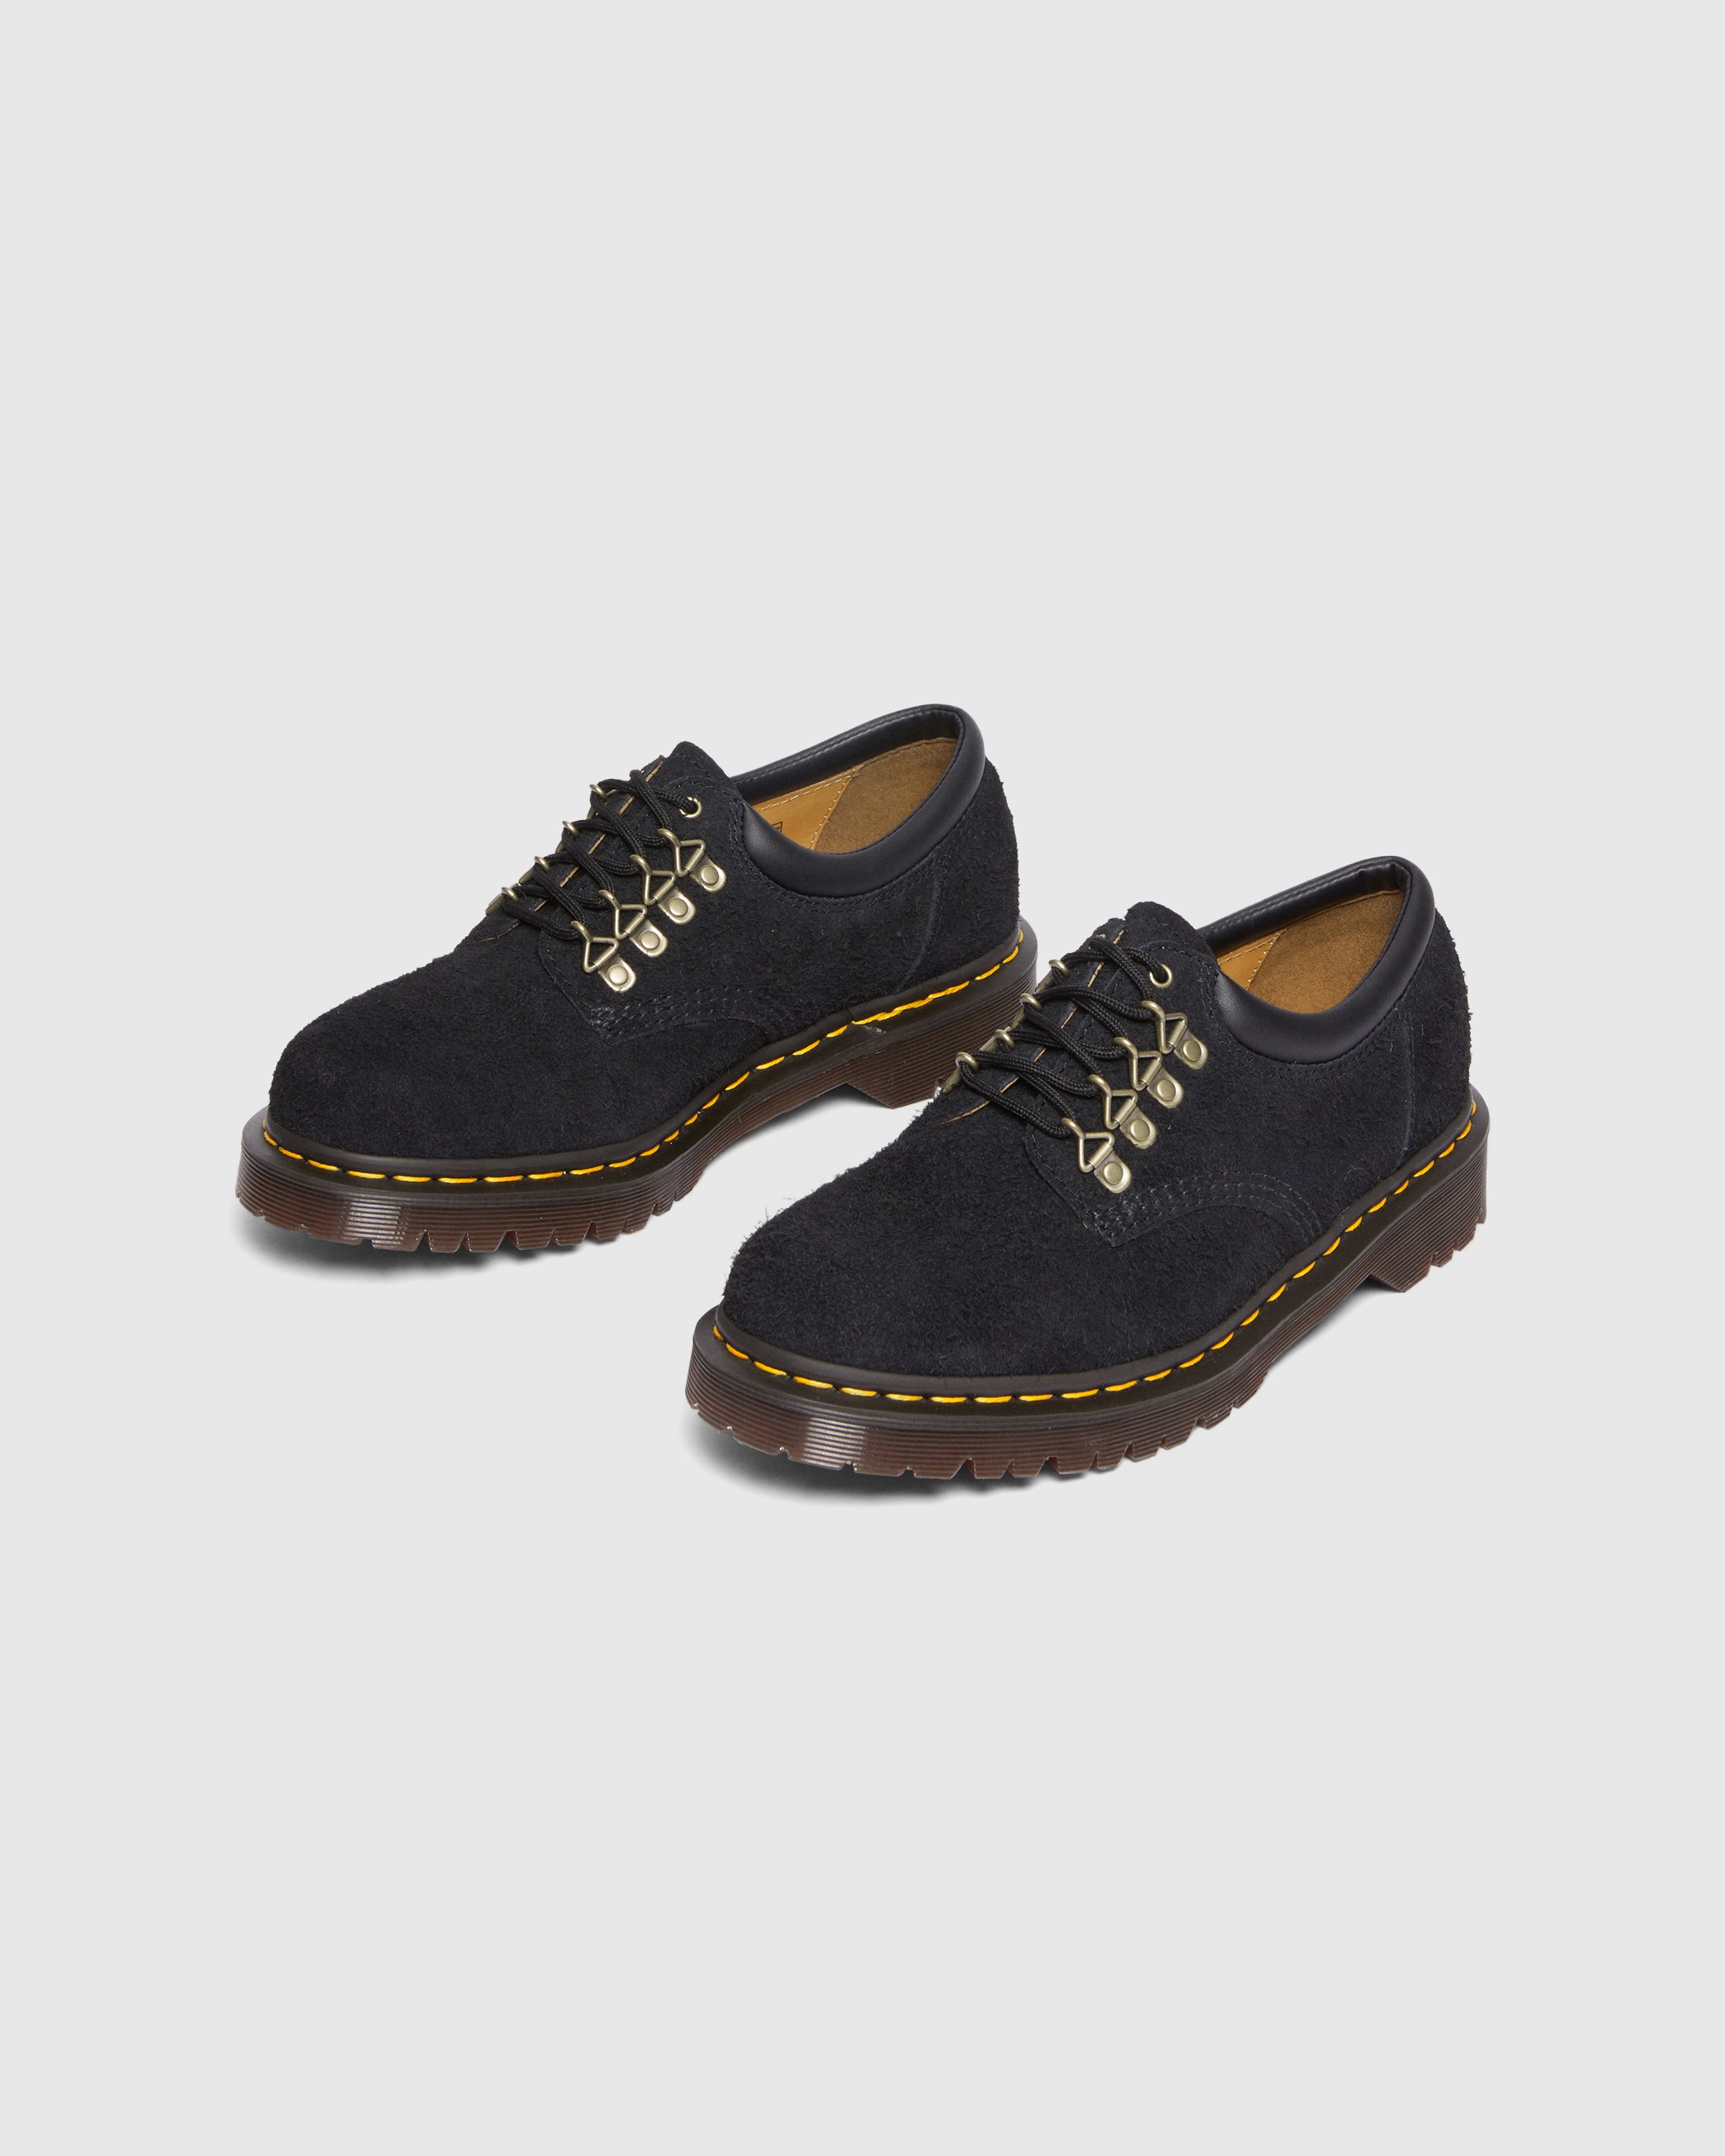 Dr. Martens - 8053 Black Long Napped Suede - Footwear - Black - Image 3